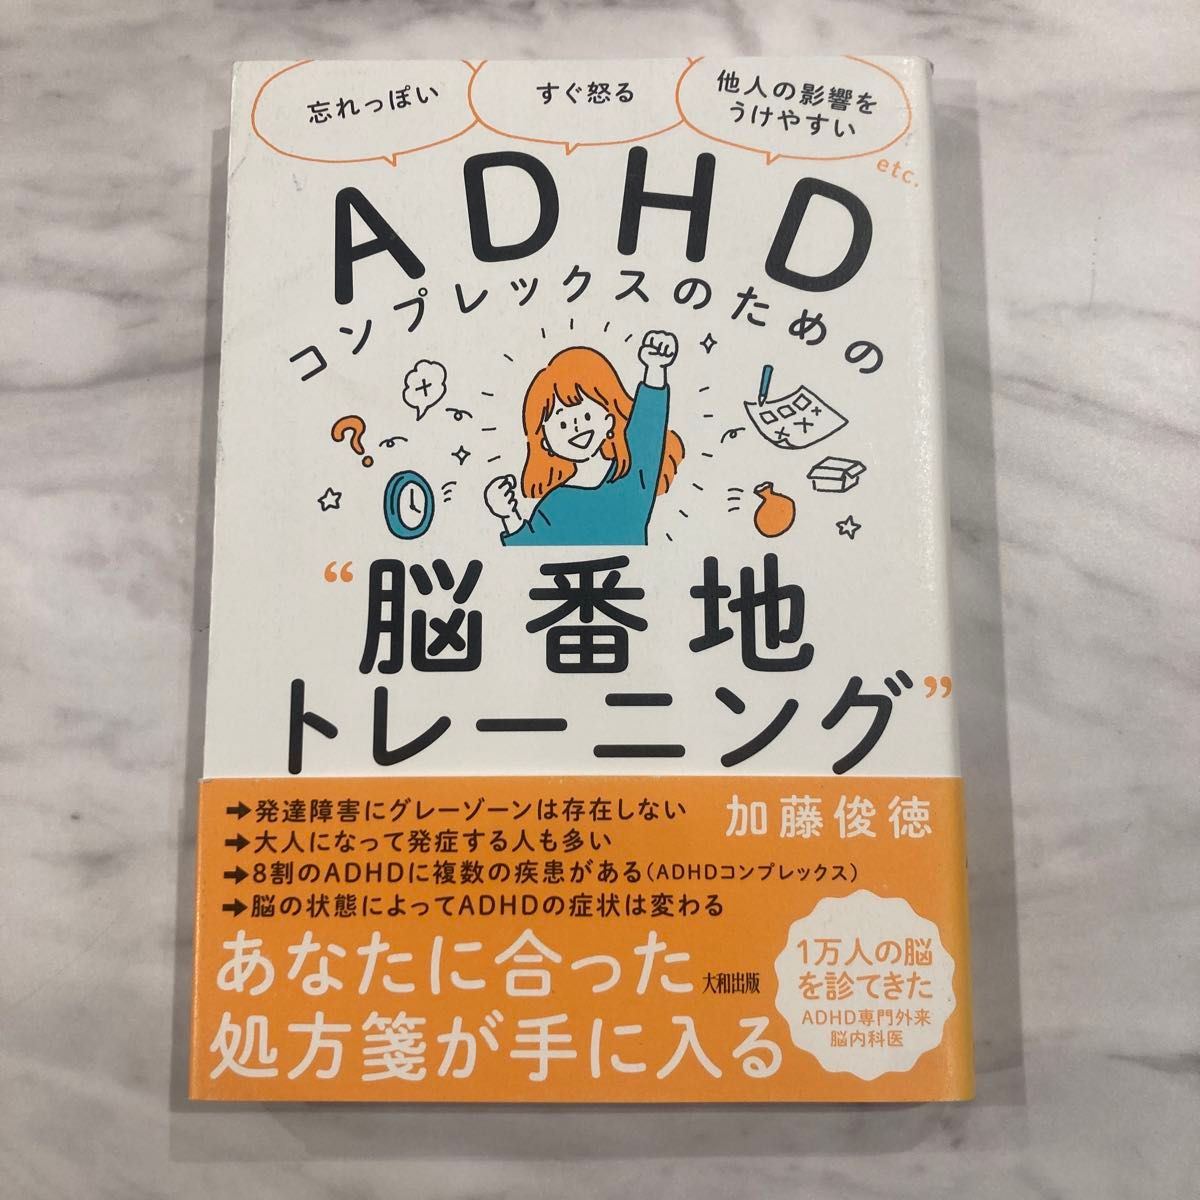 ADHDコンプレックスのための"脳番地トレーニング"